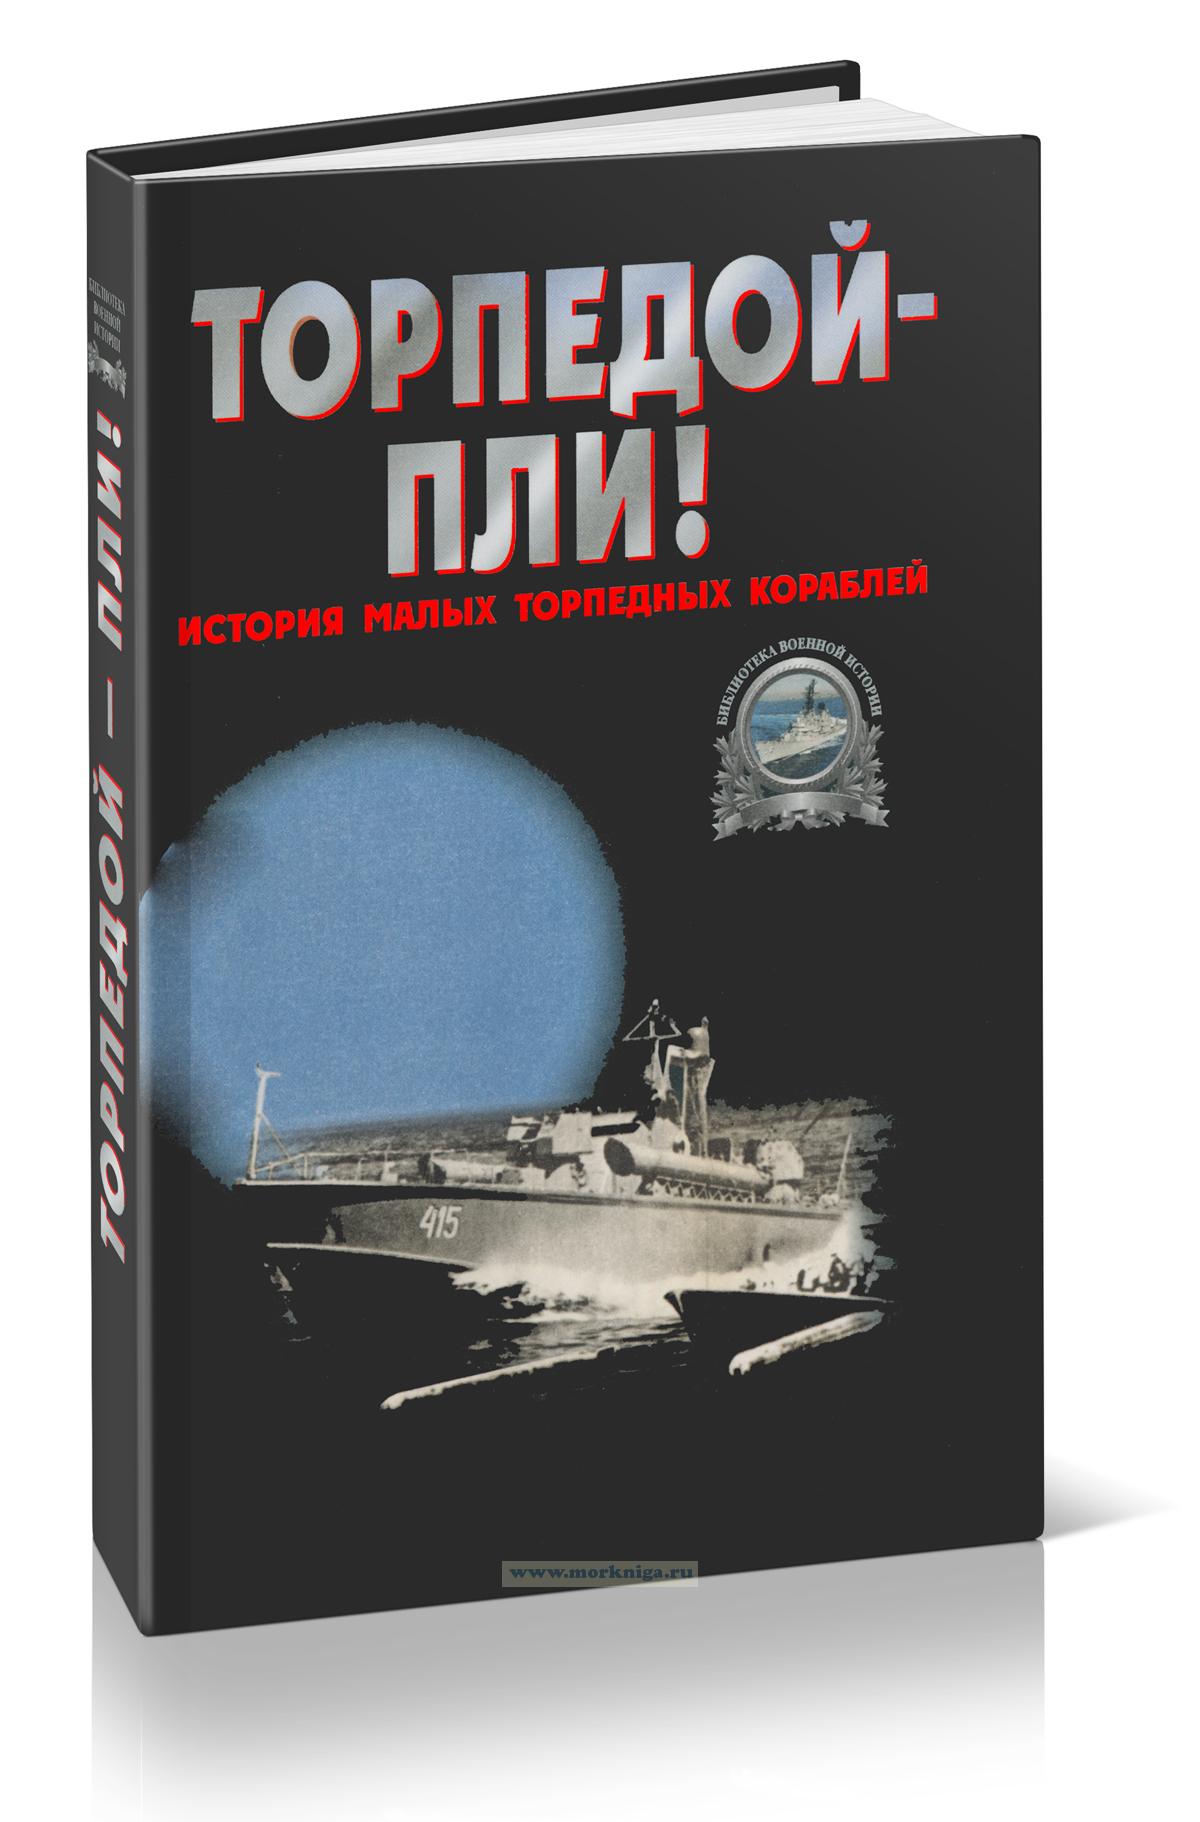 Торпедой - пли! История малых торпедных кораблей